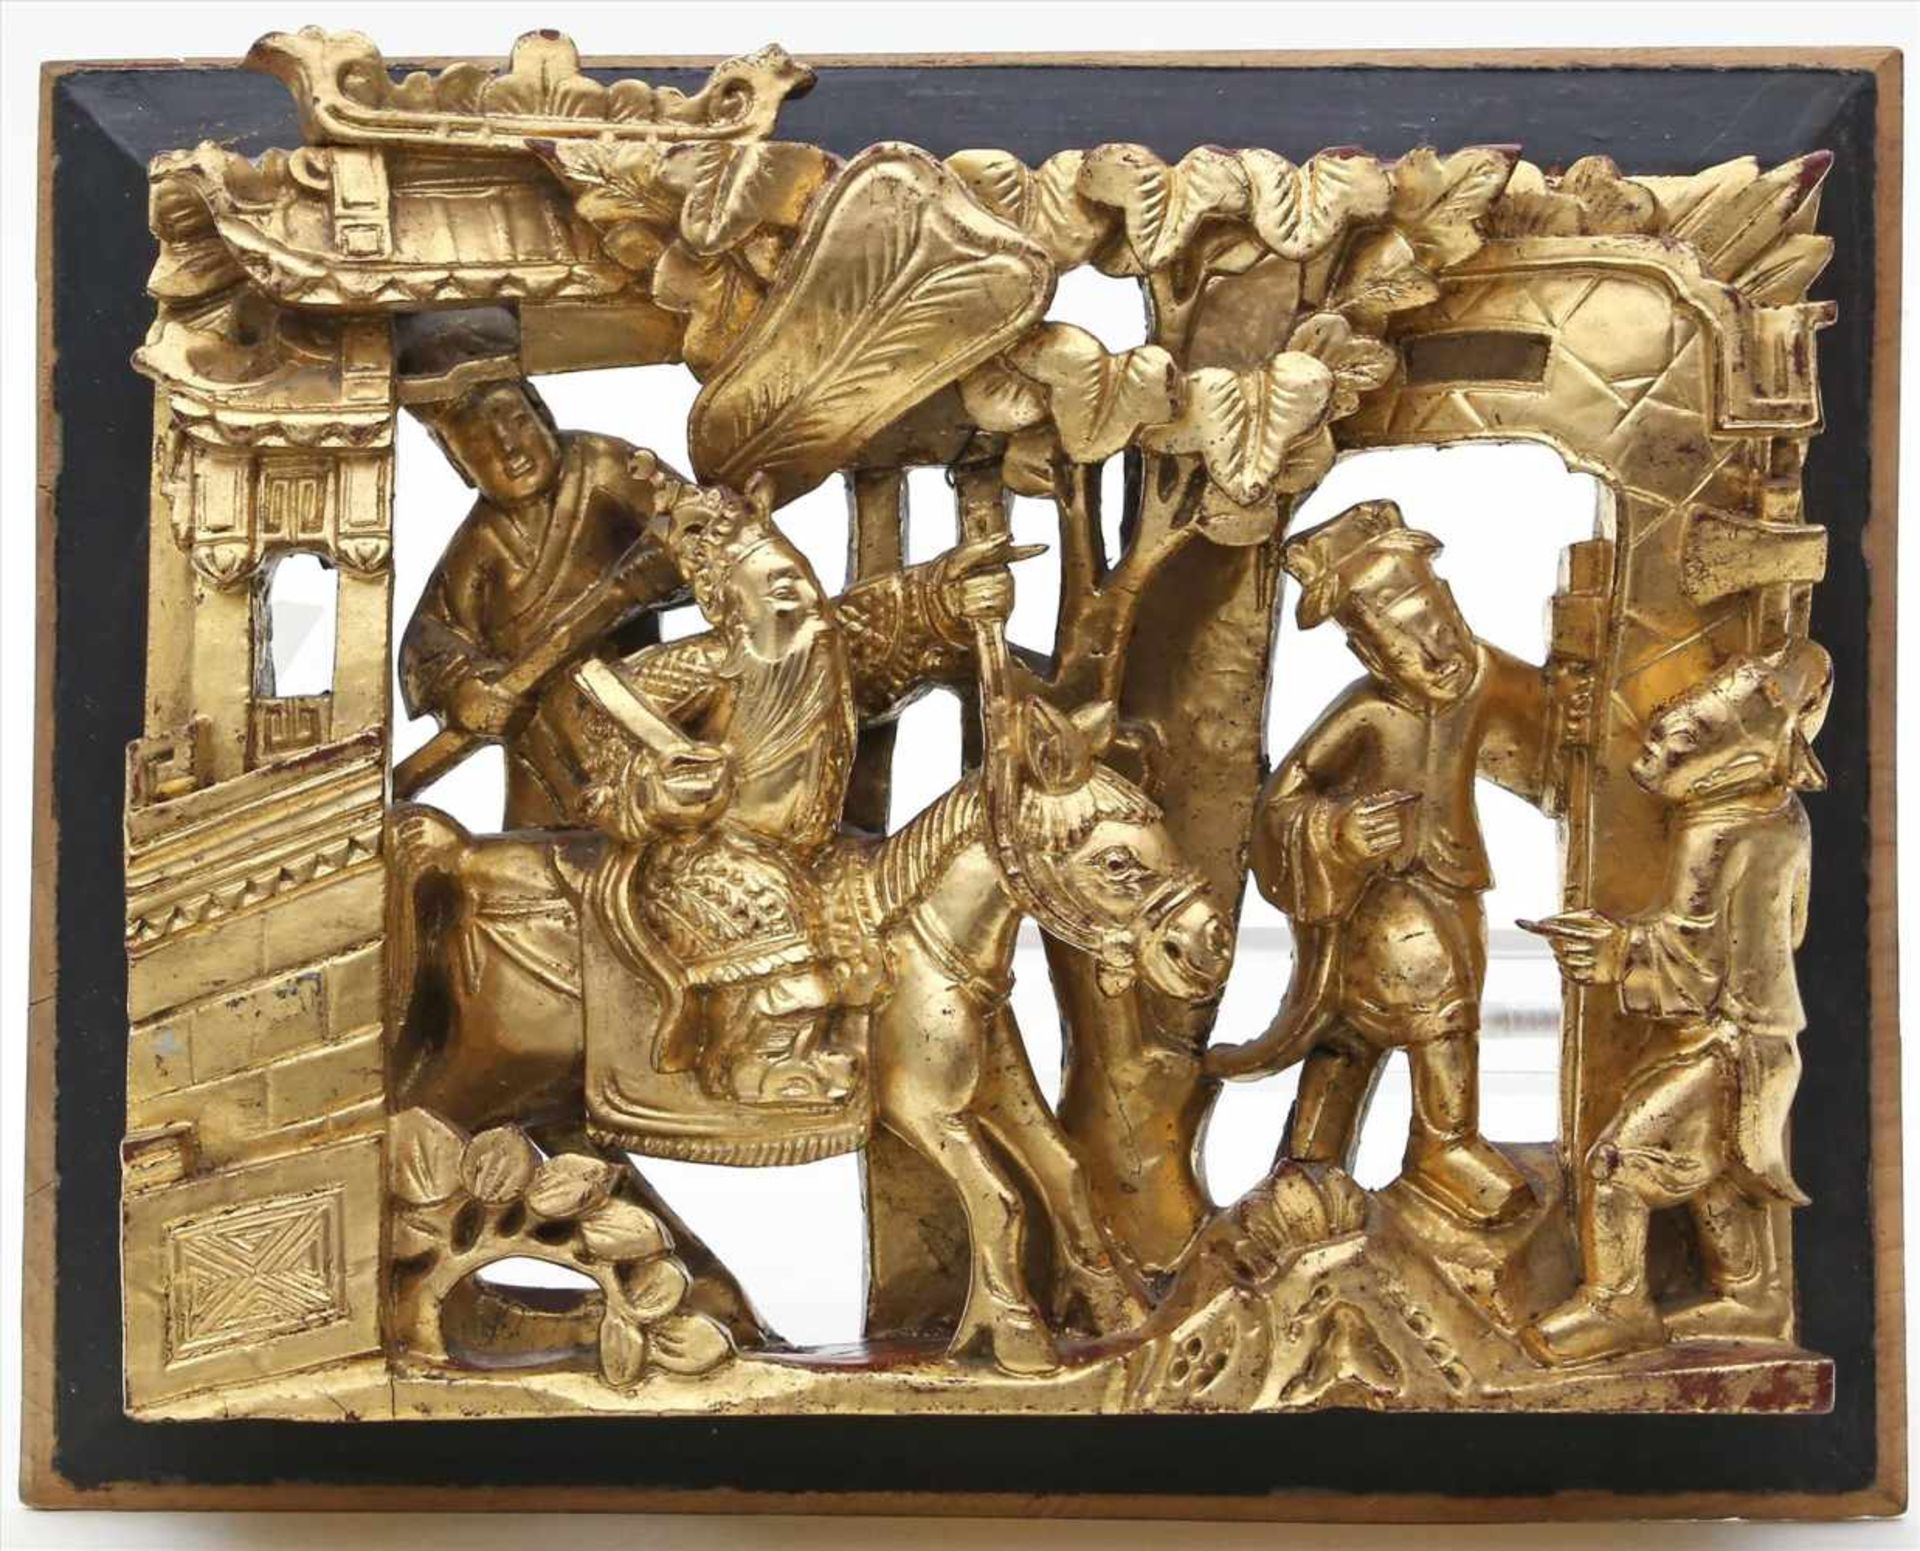 Chinesische Reliefschnitzerei.Holz, geschnitzt. Figürliche Darstellung. Golden und rot gefasst.